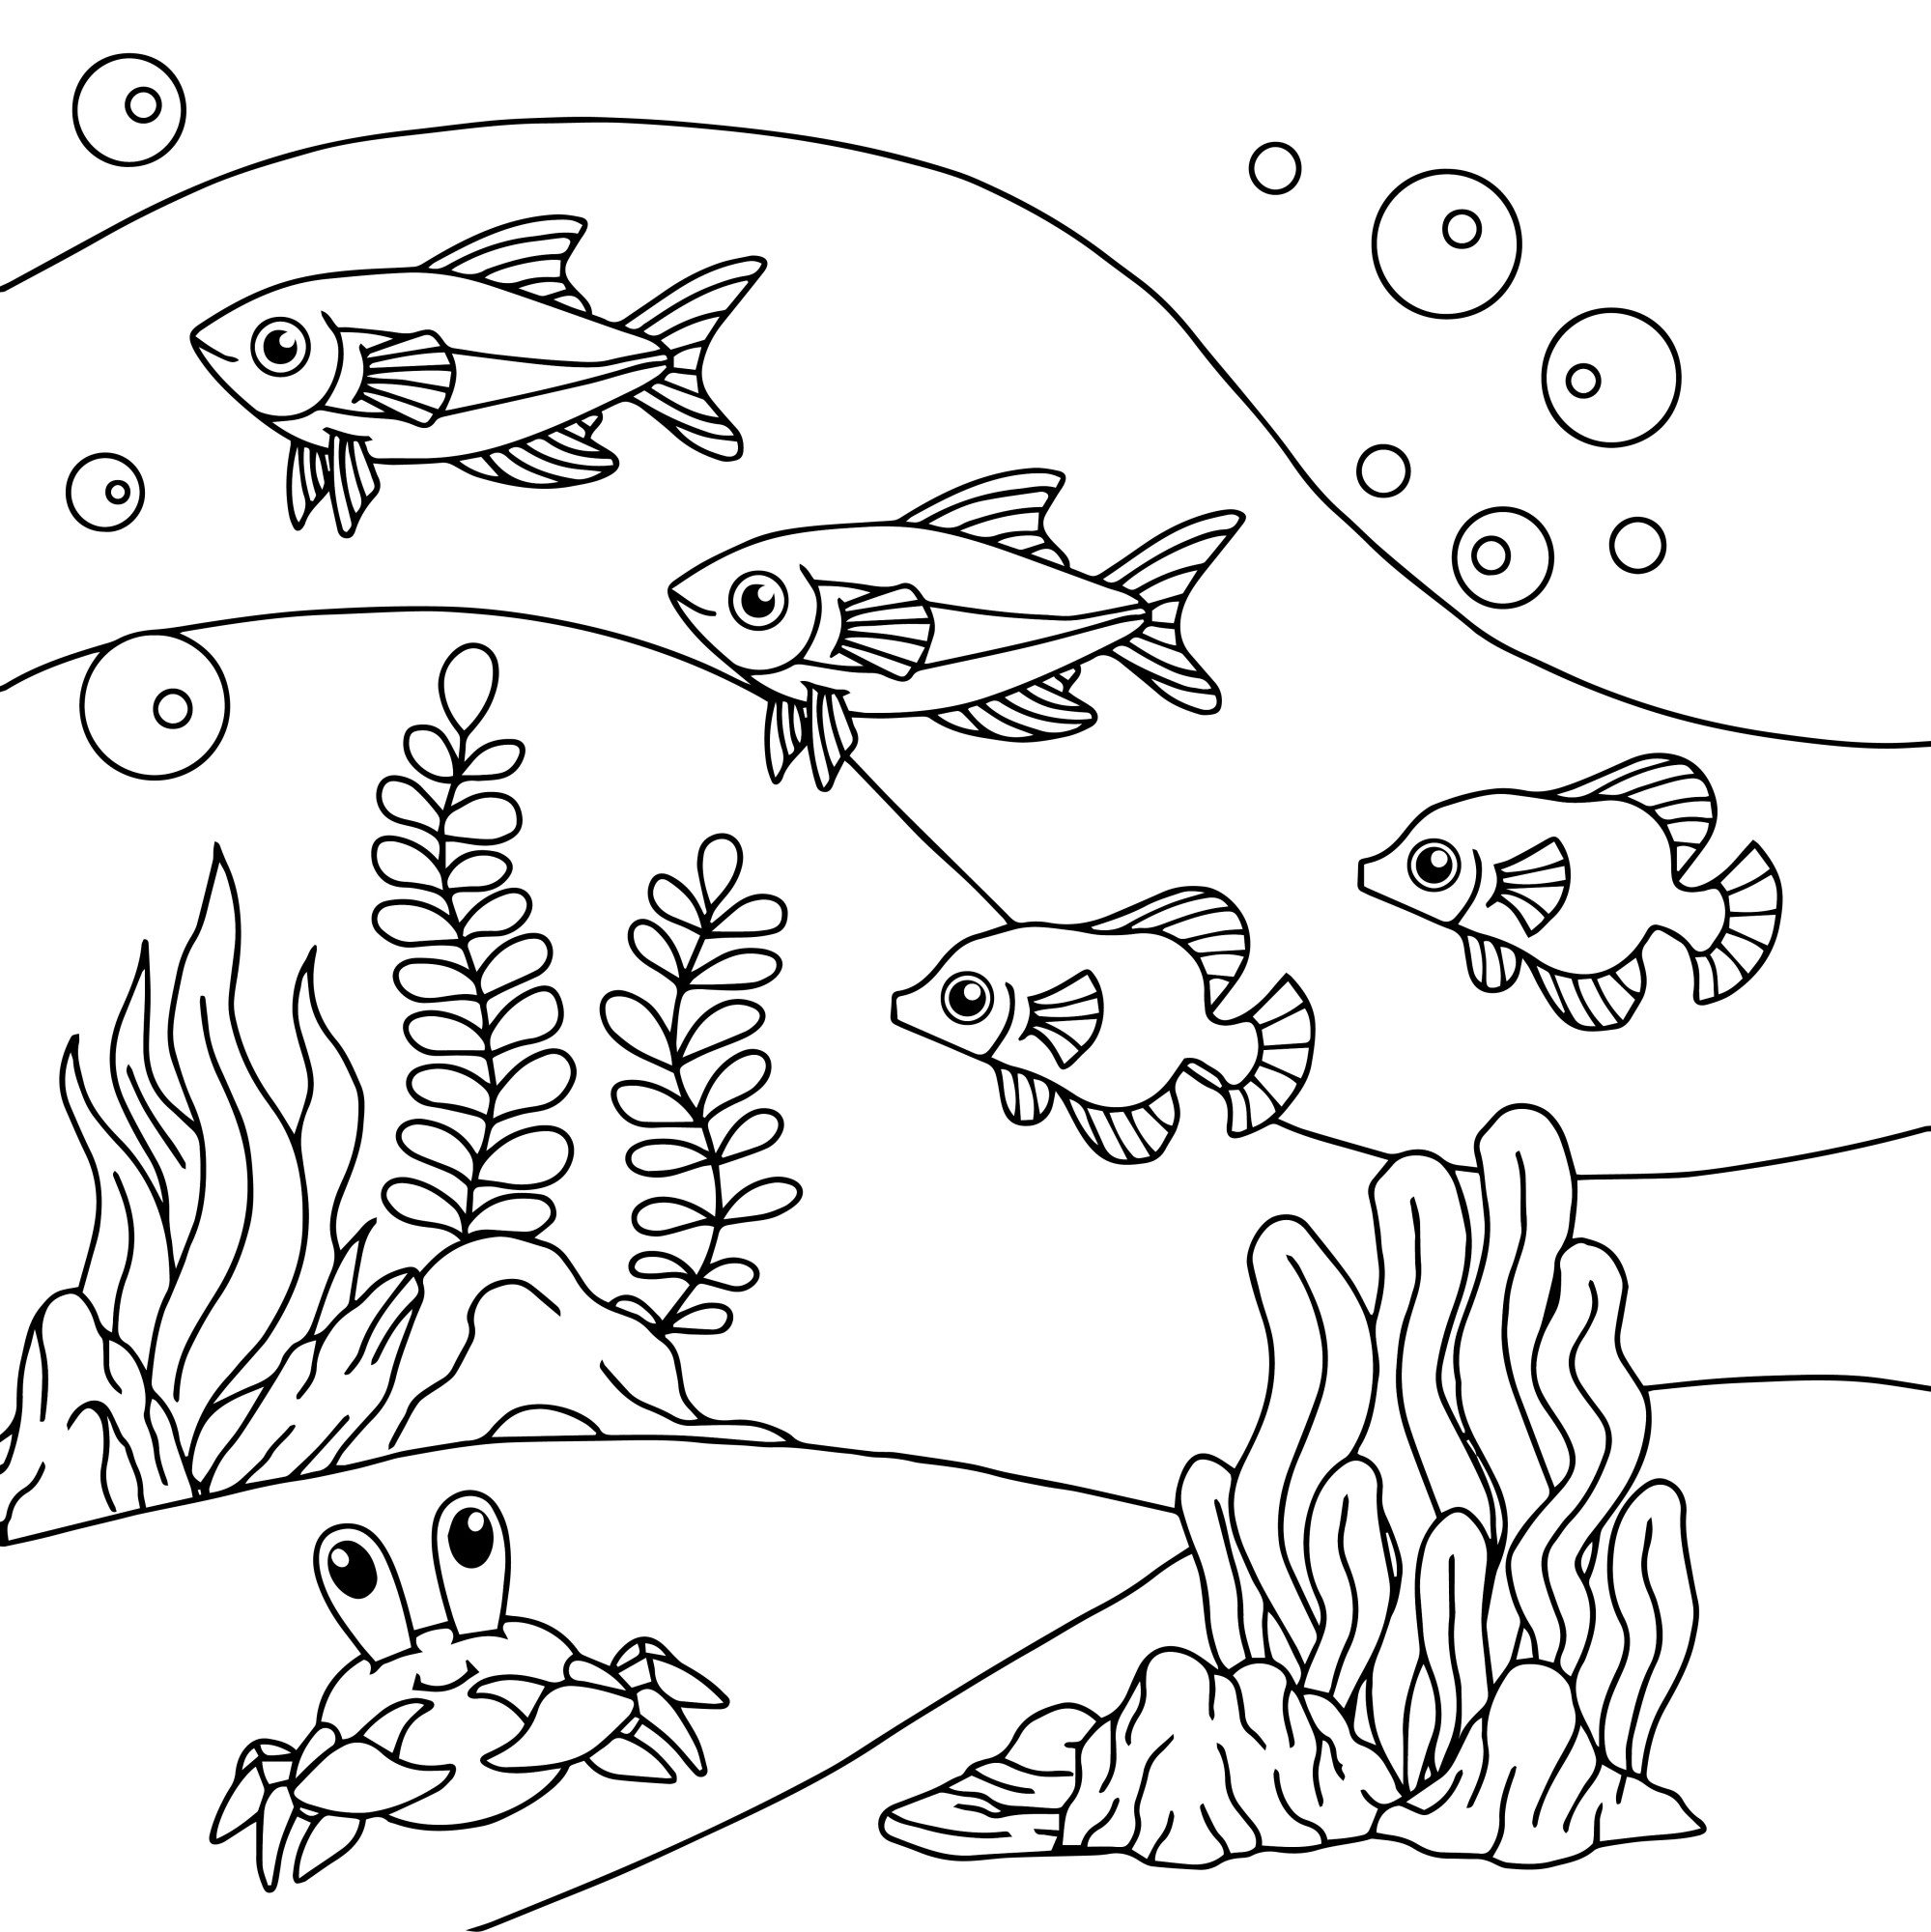 Раскраска для детей: рыбы с крабом